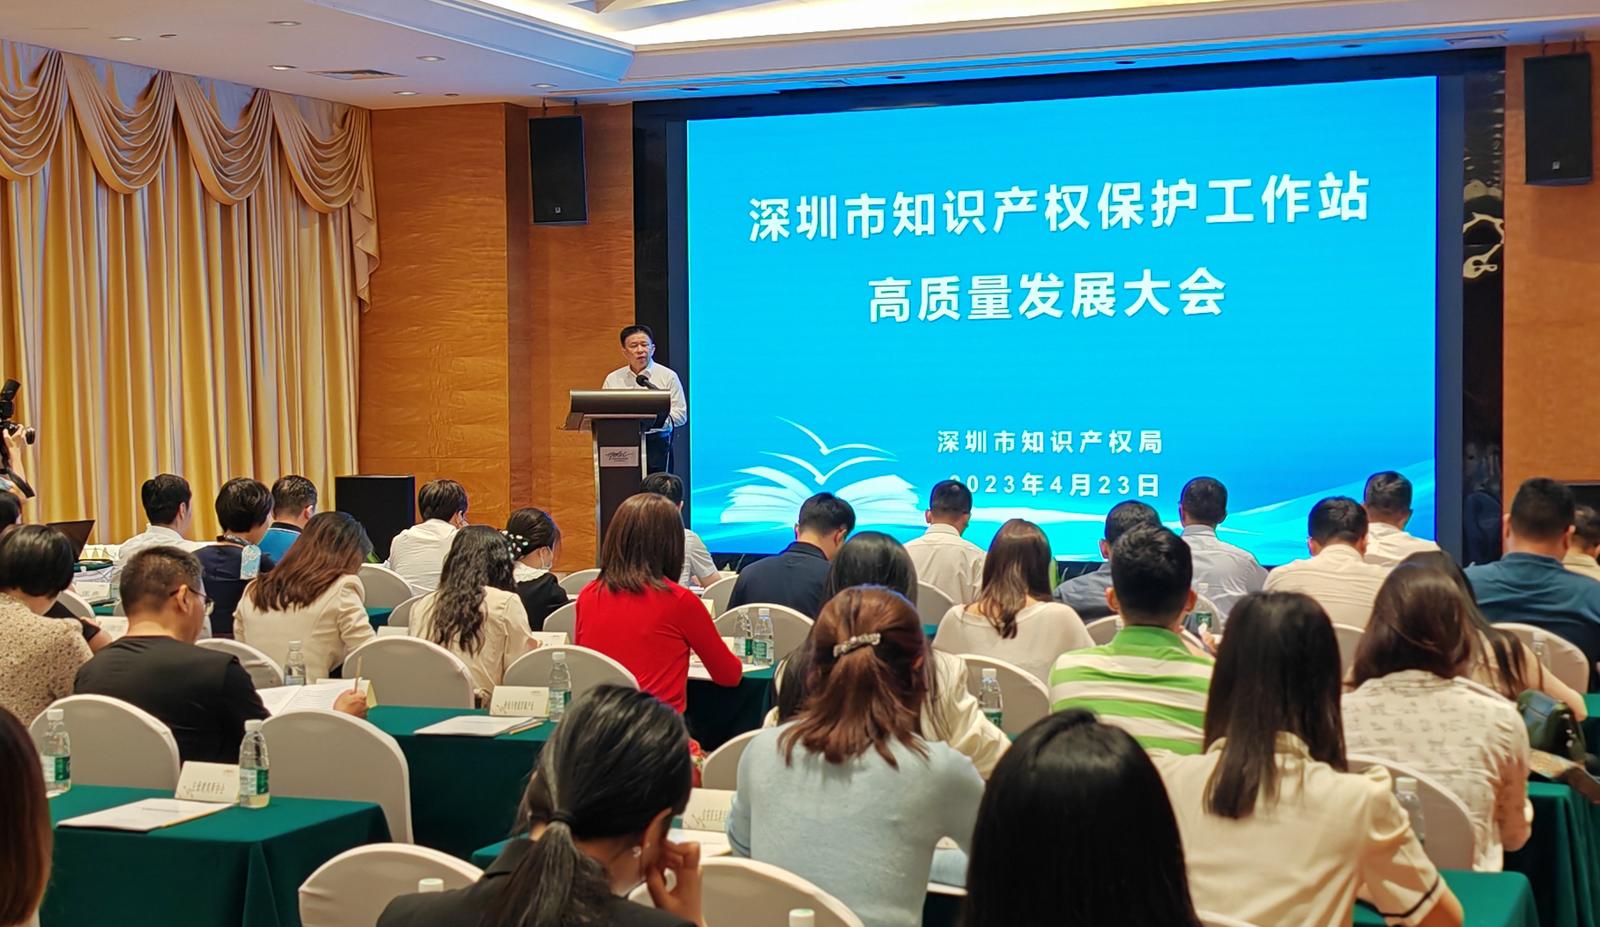 深圳建知识产权保护工作站130家 助推高质量发展